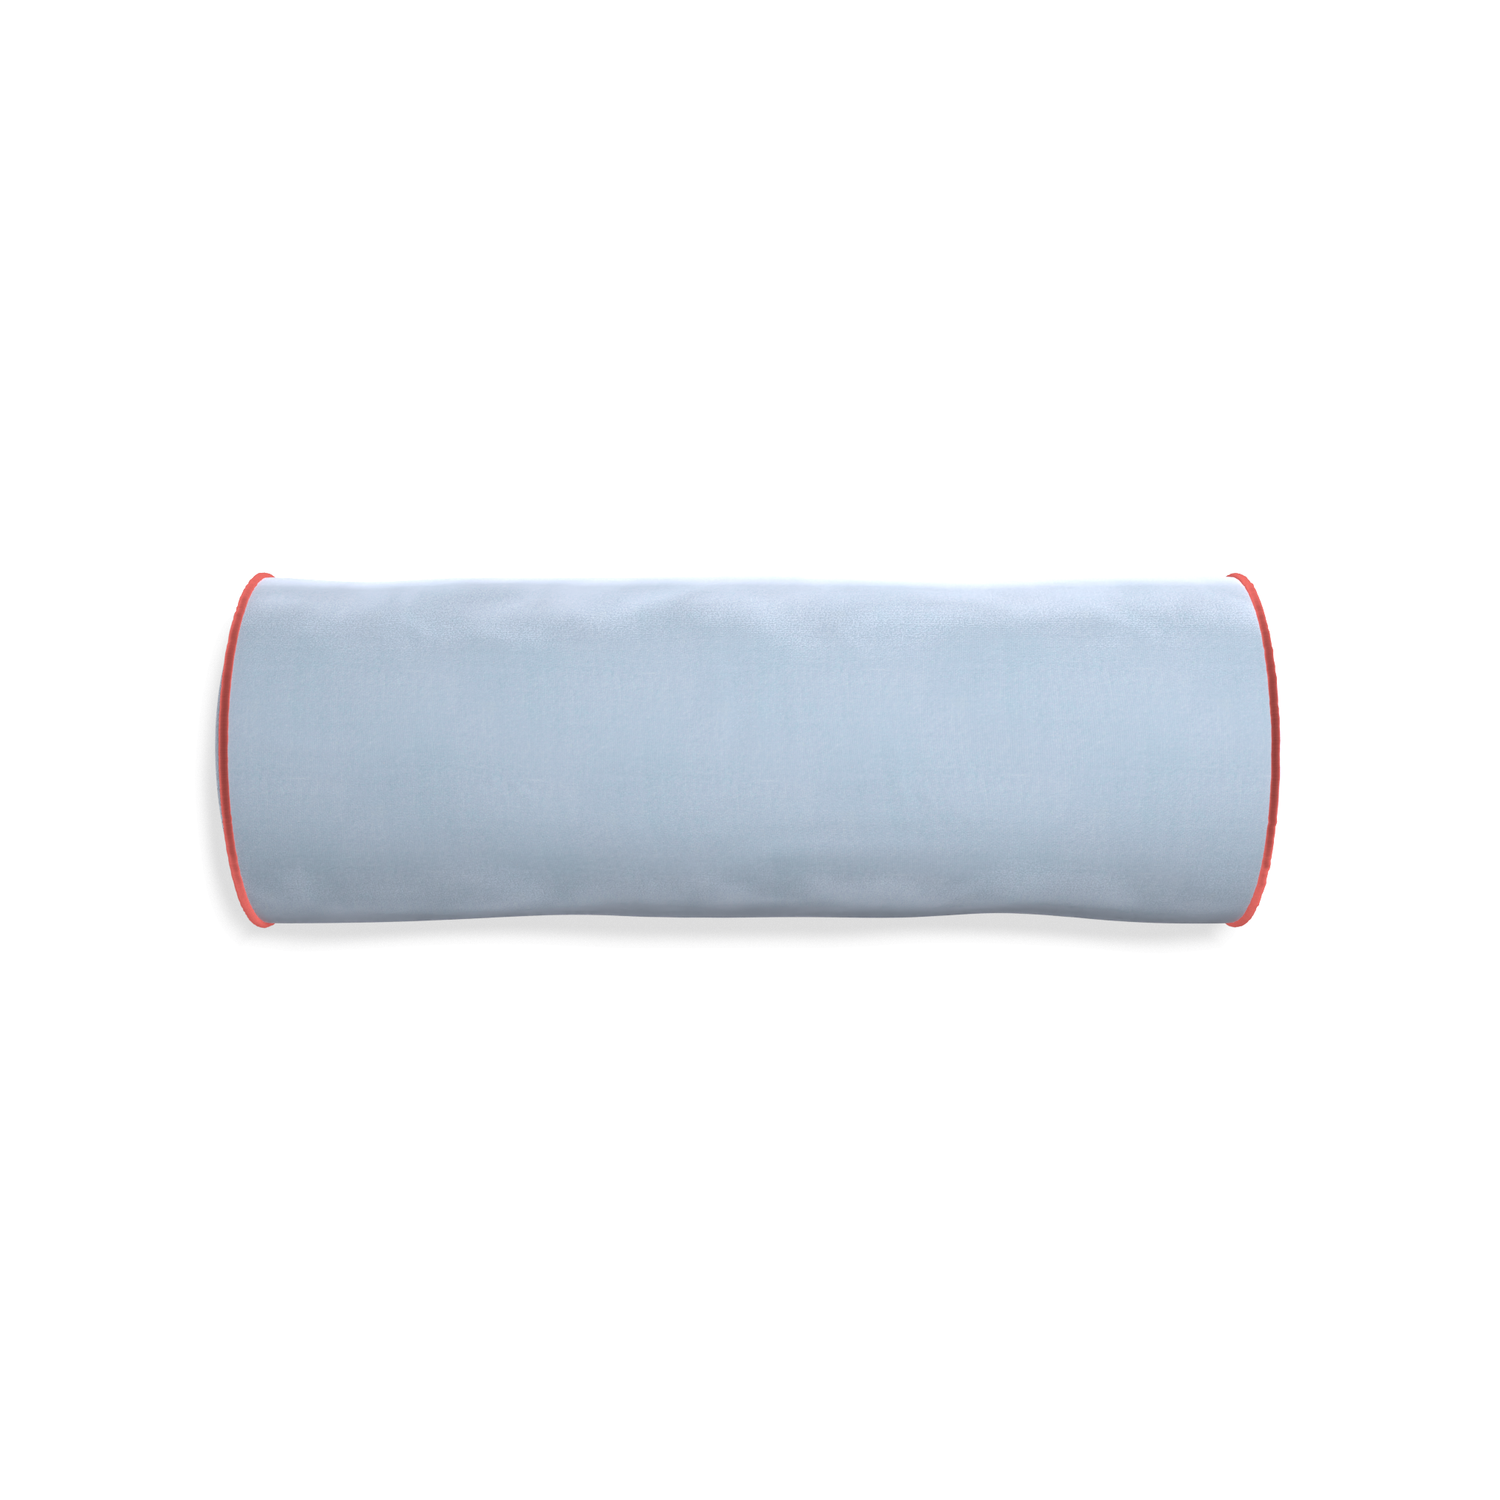 Bolster sky velvet custom pillow with c piping on white background